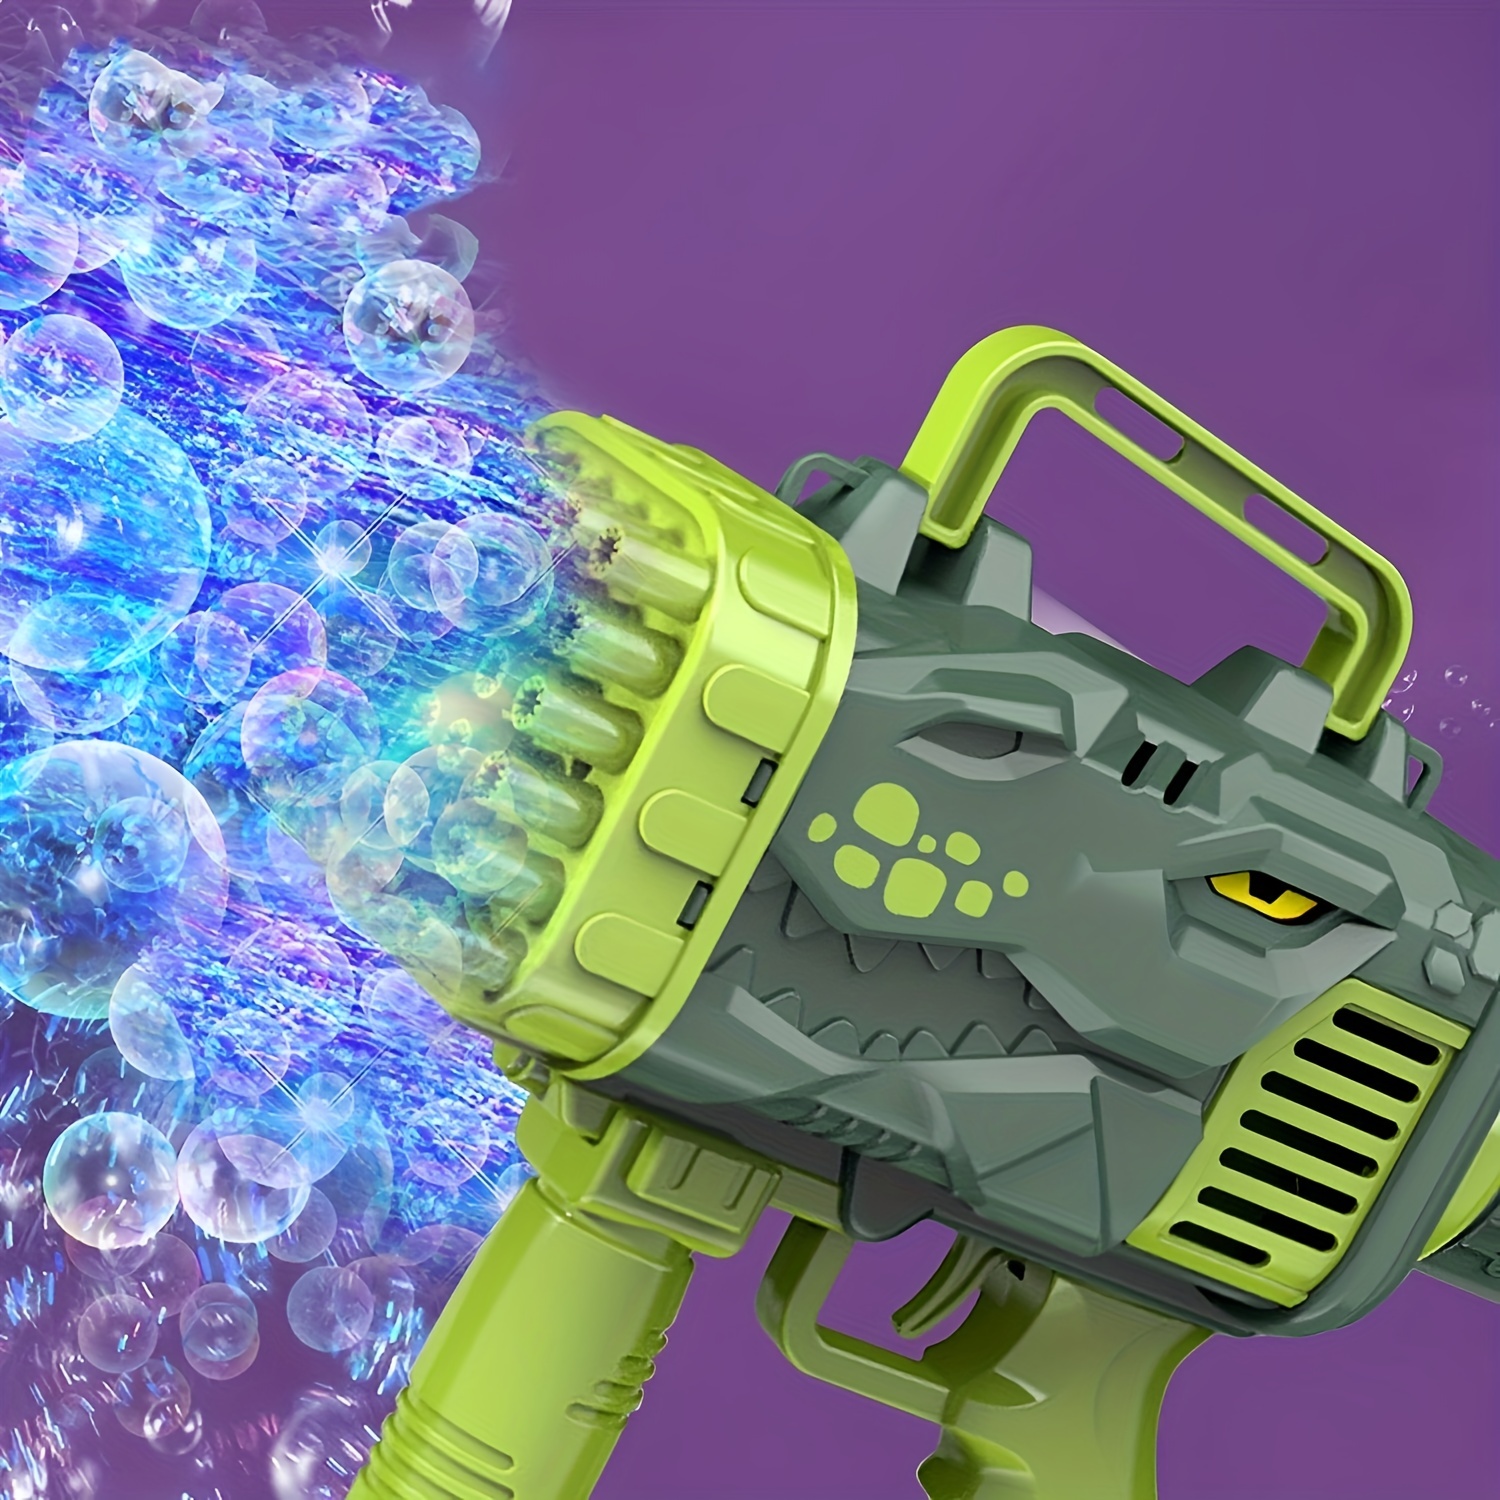 32-hole Bubble Gun Electric Automatic Soap Rocket Bubble Machine